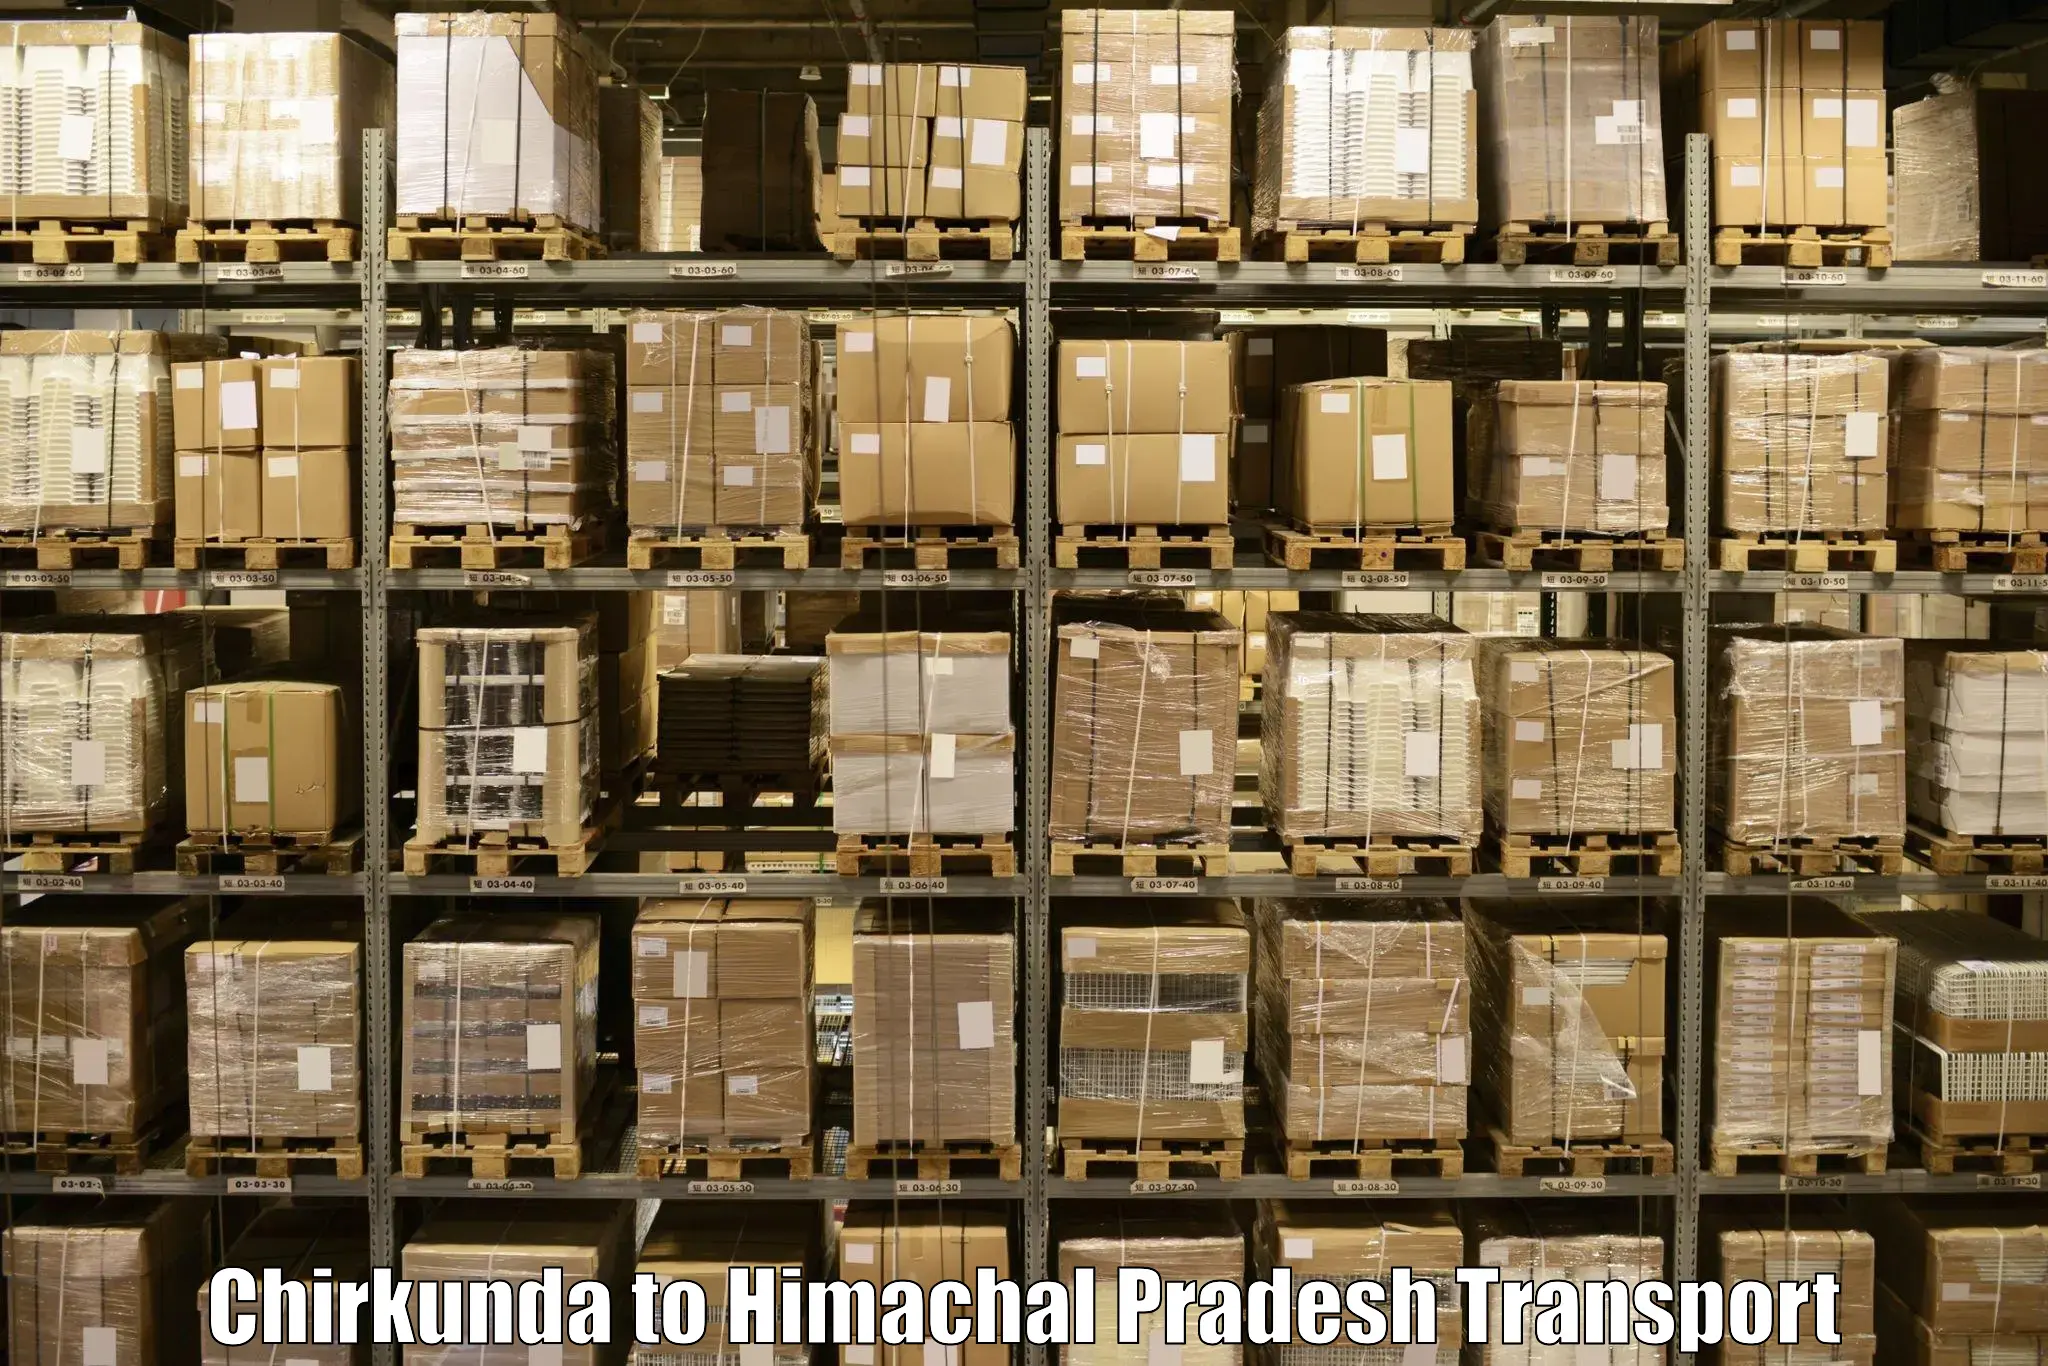 Delivery service Chirkunda to Sundar Nagar